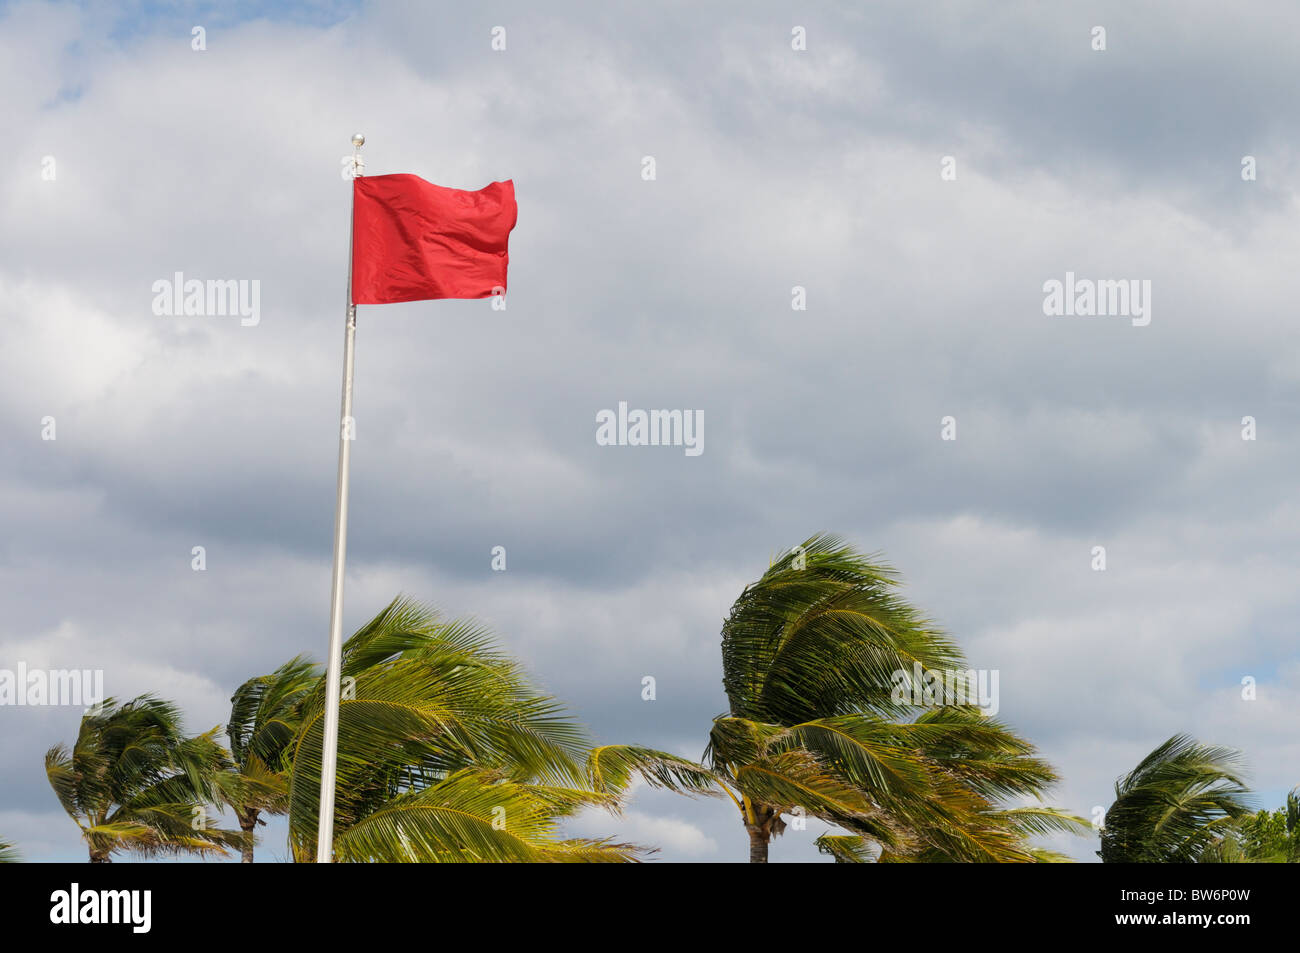 Precaución bandera roja en una playa del Caribe durante los vientos fuertes desde el próximo huracán Tomas Foto de stock